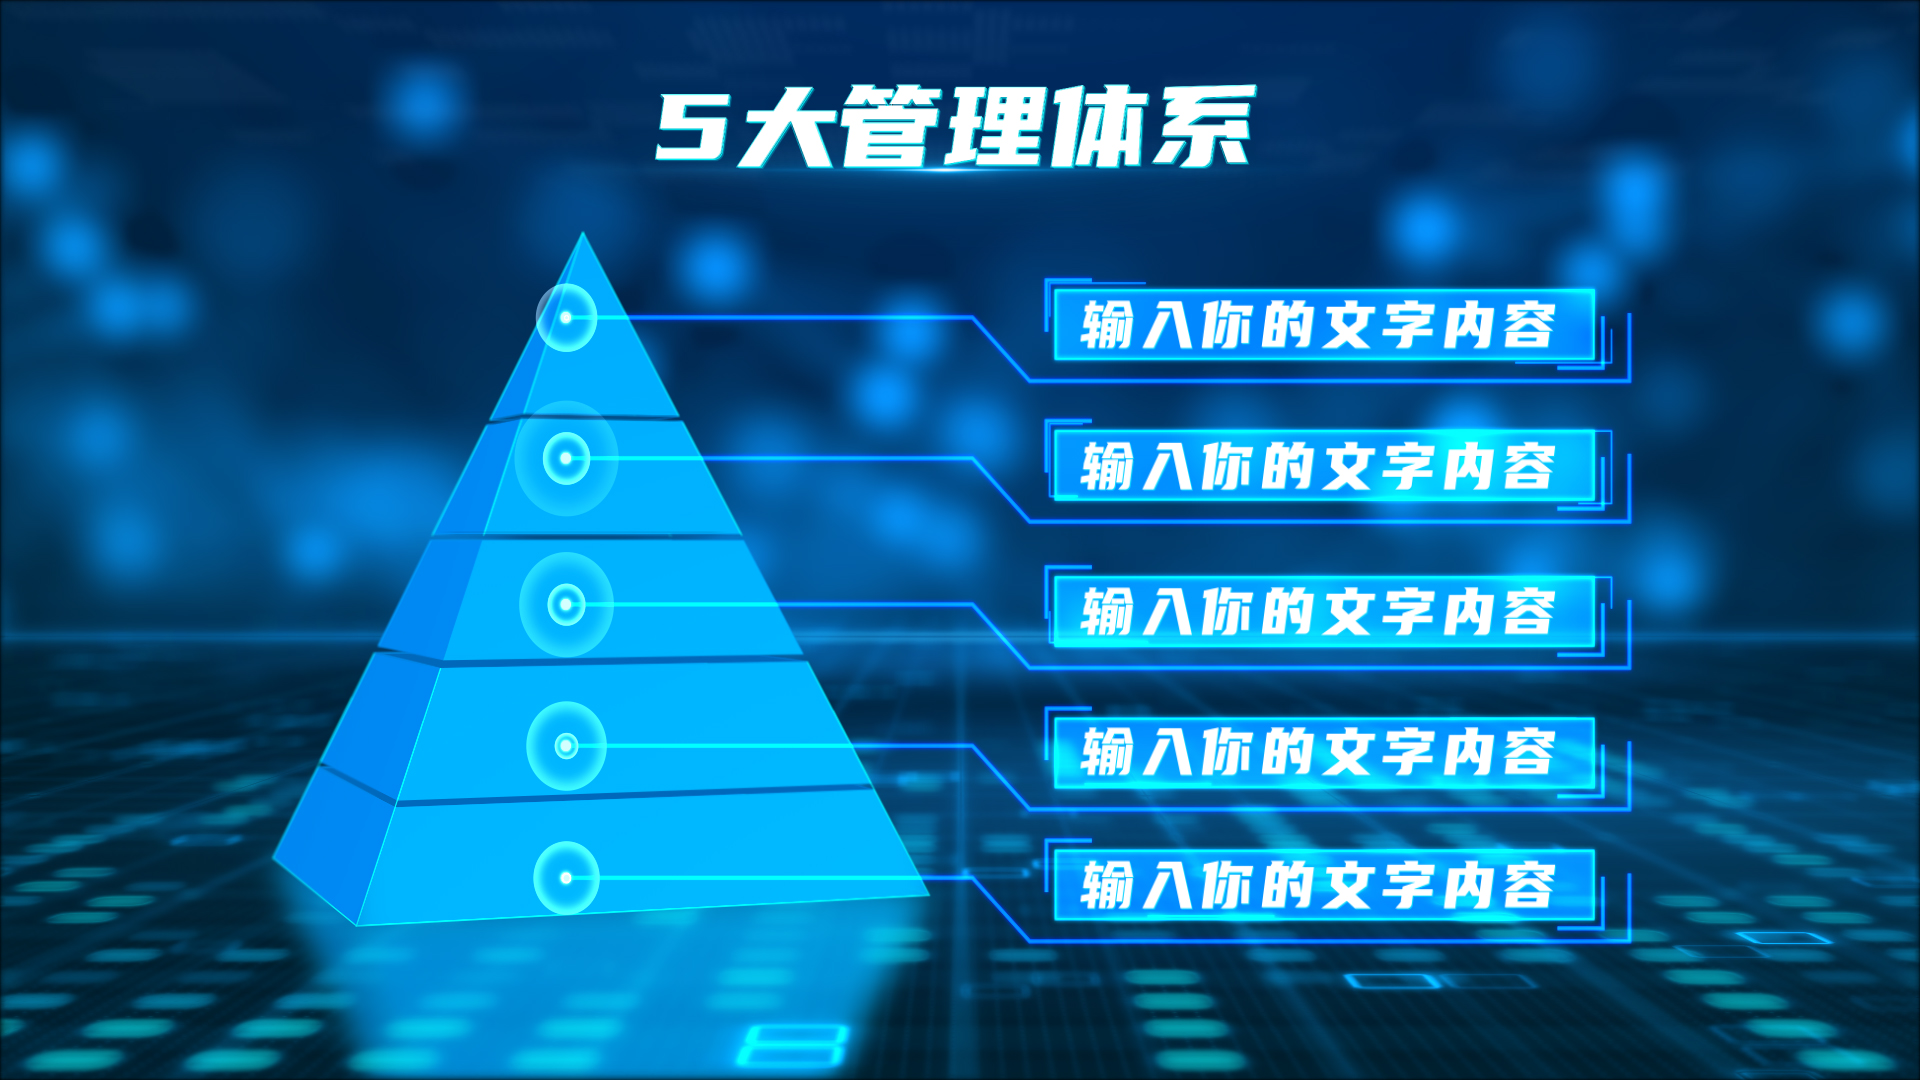 蓝色立体金字塔层级分类模块7